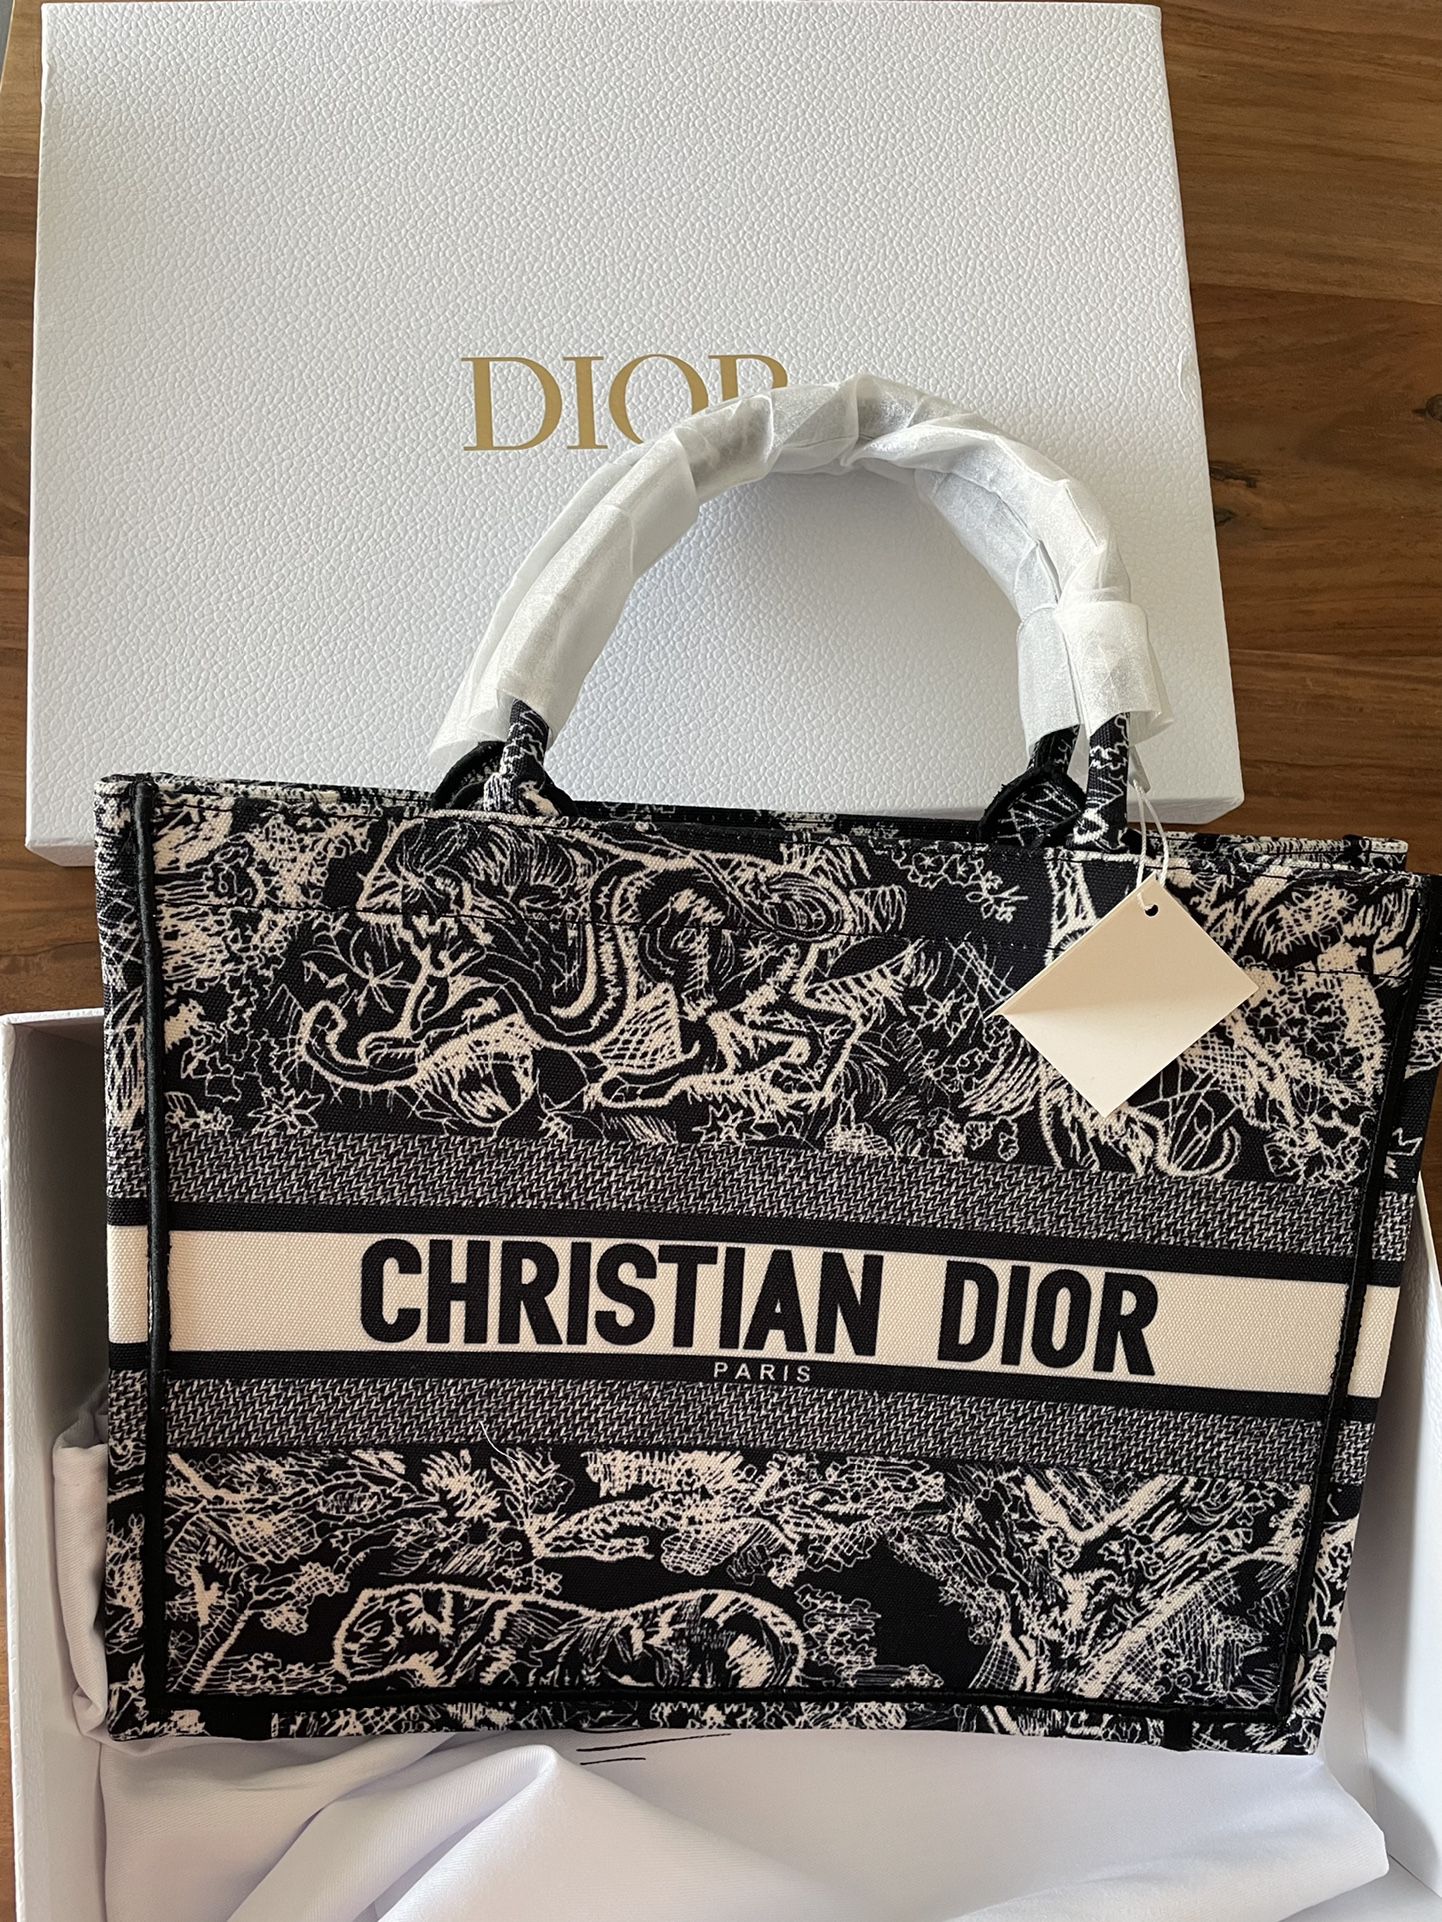 Dior Bobby Bag for Sale in Medley, FL - OfferUp